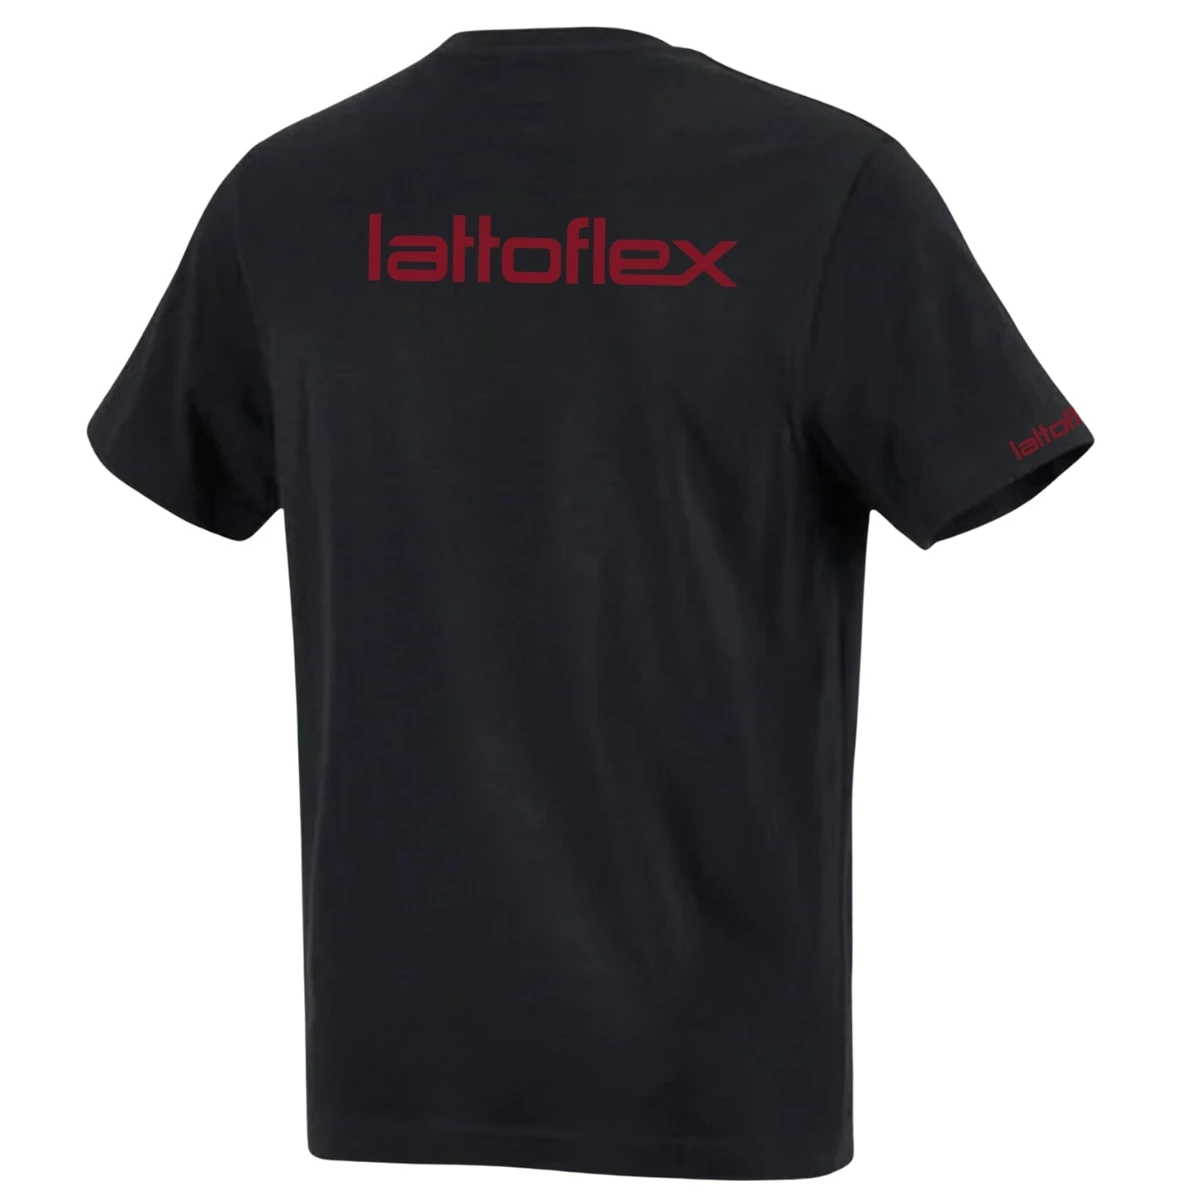 Lattoflex Herren T-Shirt